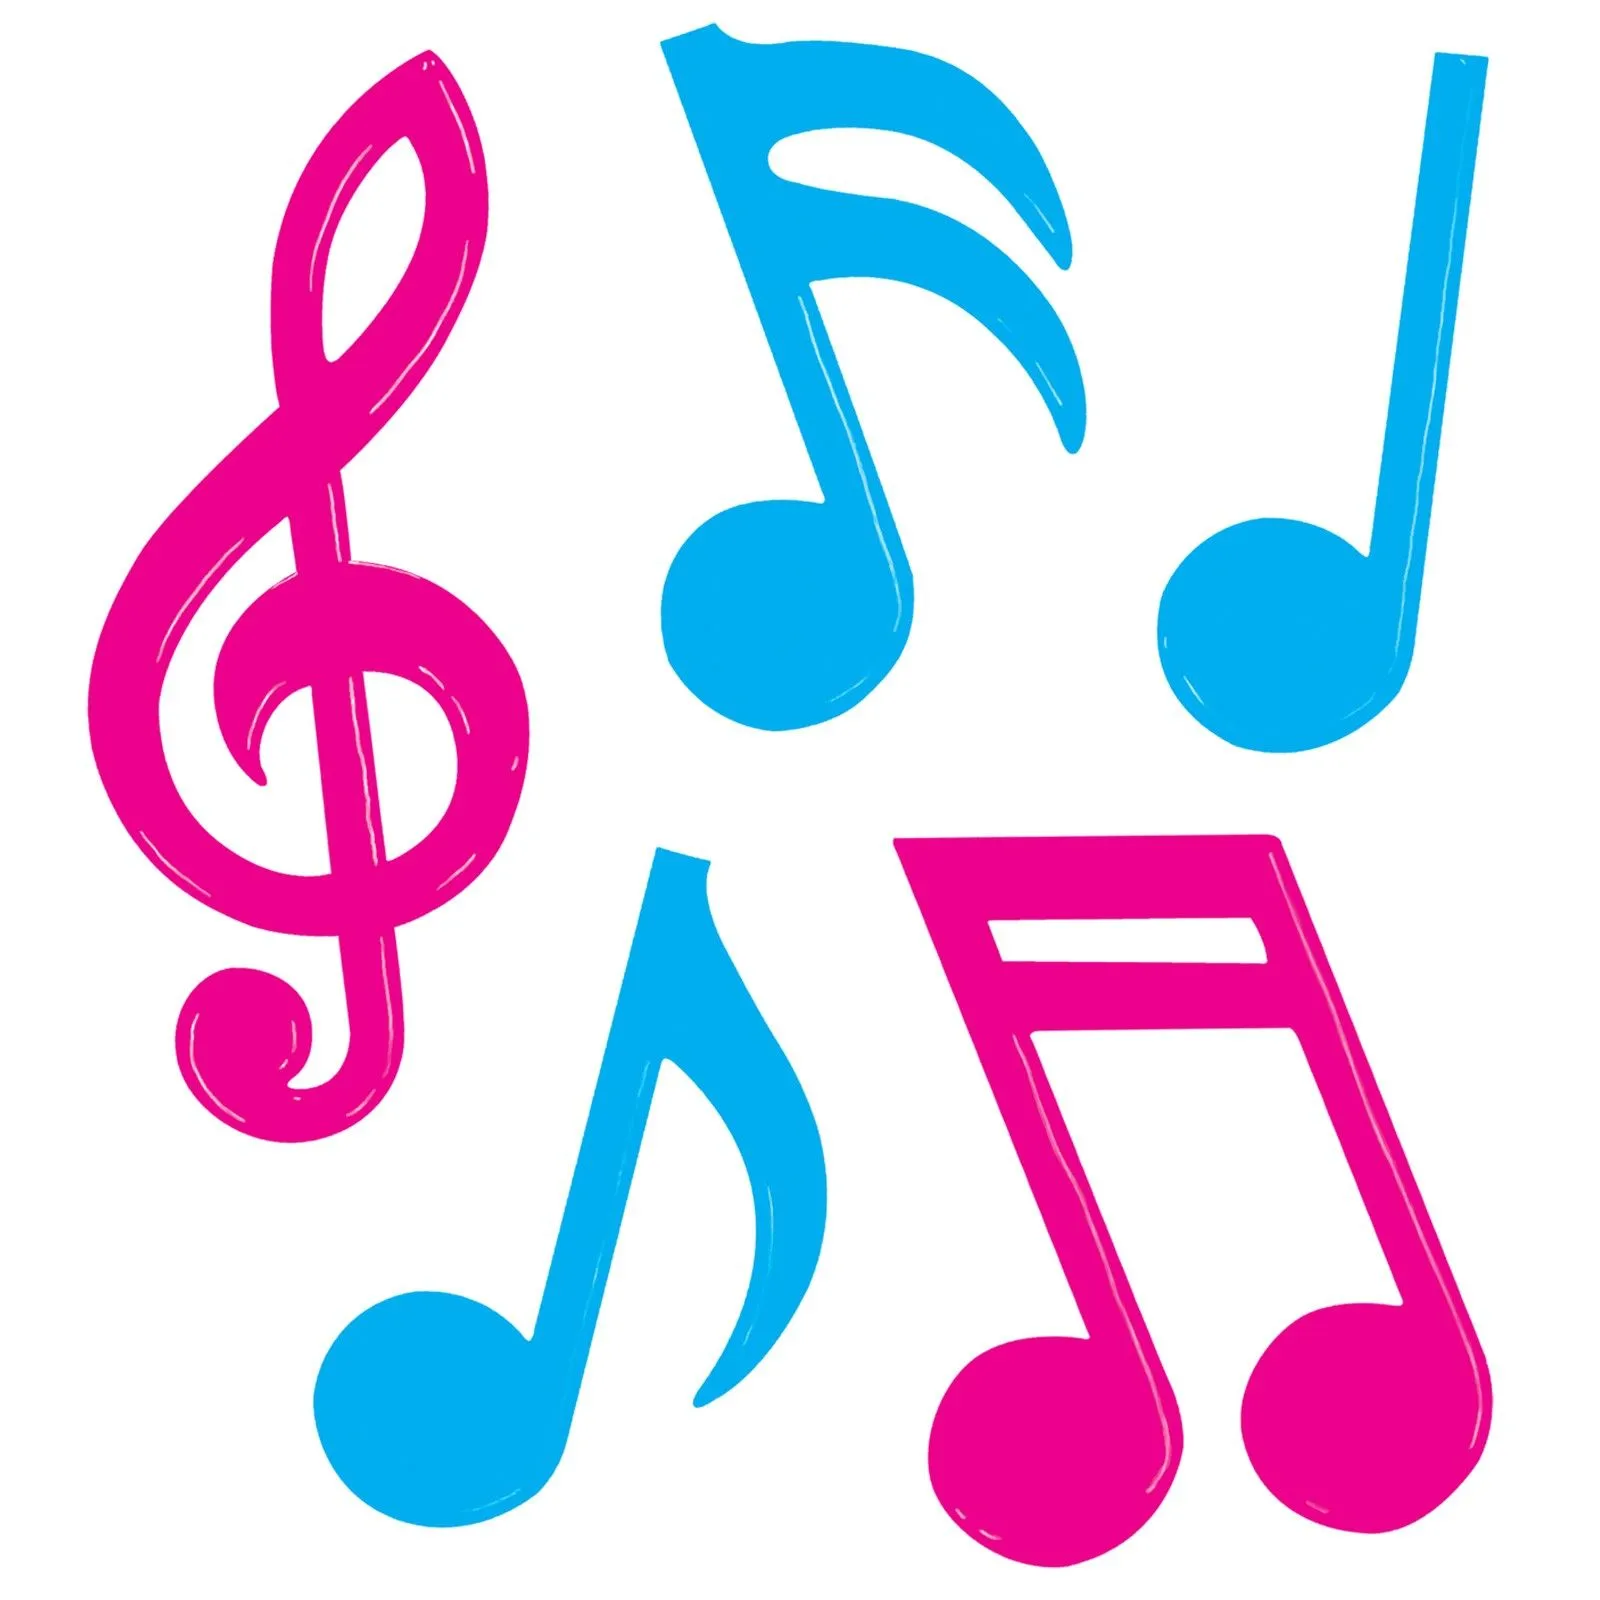 notas musicales 3d - Buscar con Google | fondos | Pinterest | 3d ...